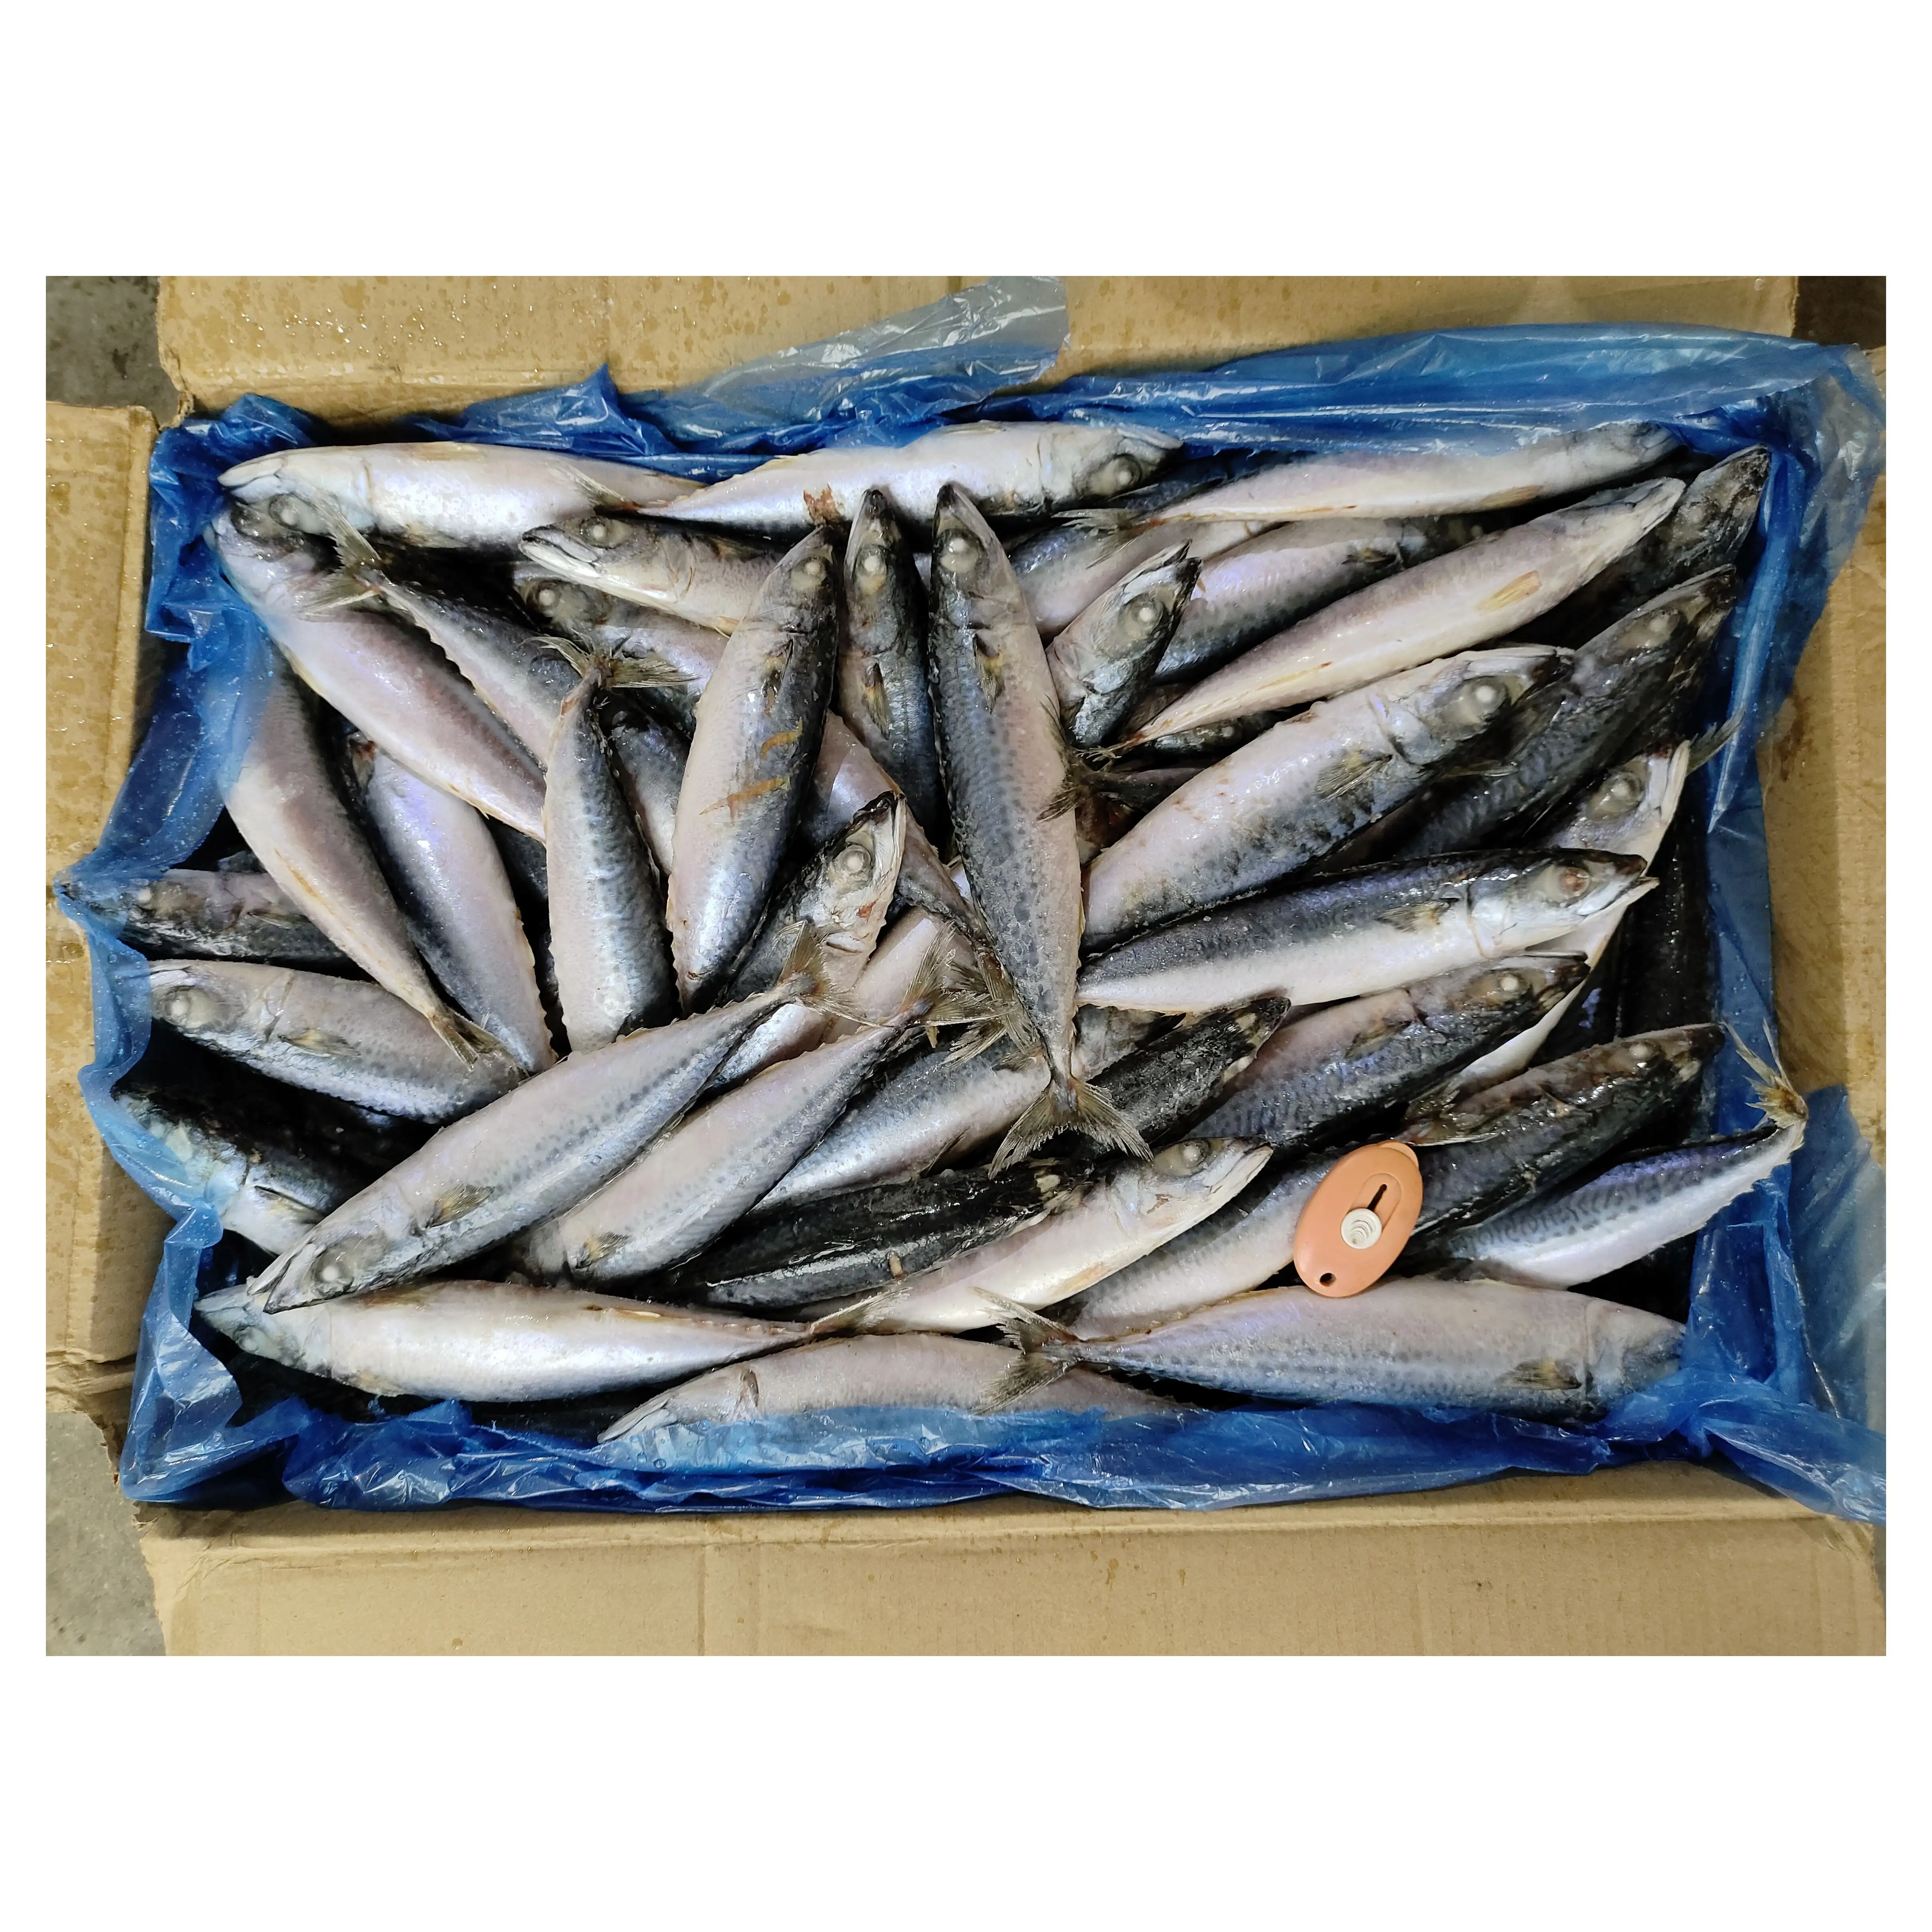 الأسماك الجديدة F2401 الماكريل المجمدة من المصنع بأشكال دائرية كاملة 100-200G سمك الماكريل المجمد من المحيط الهادئ SCOMBER JAPONICUS